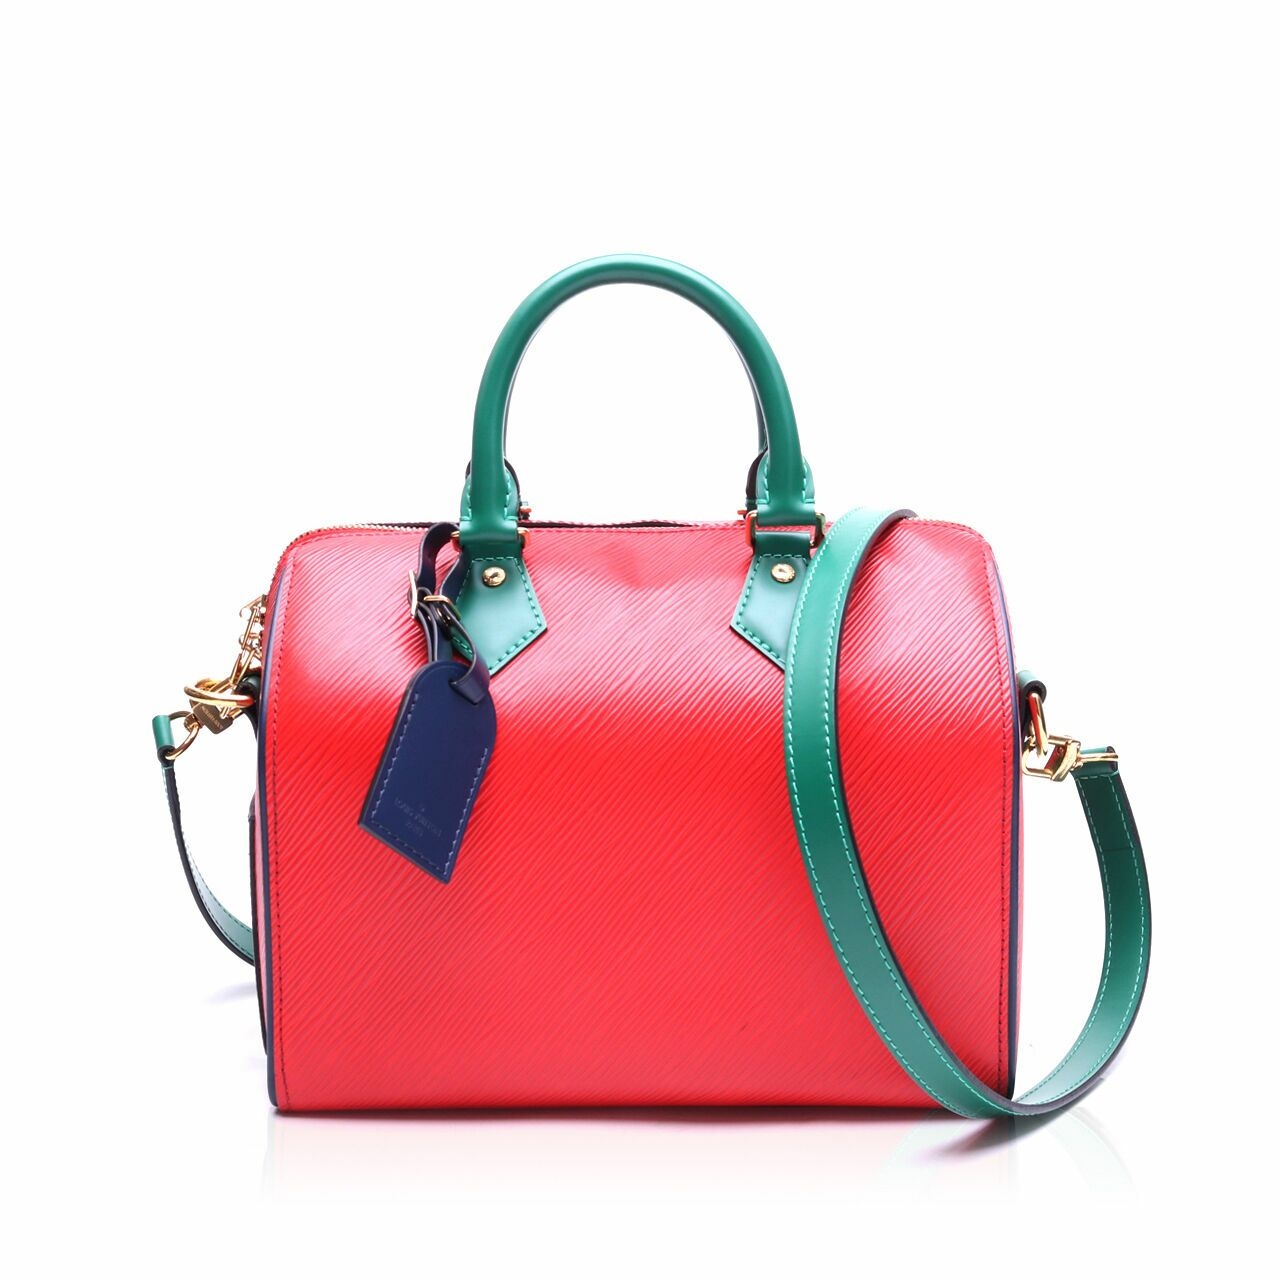 Louis Vuitton Speedy Tri-color Bandouliere Satchel Bag